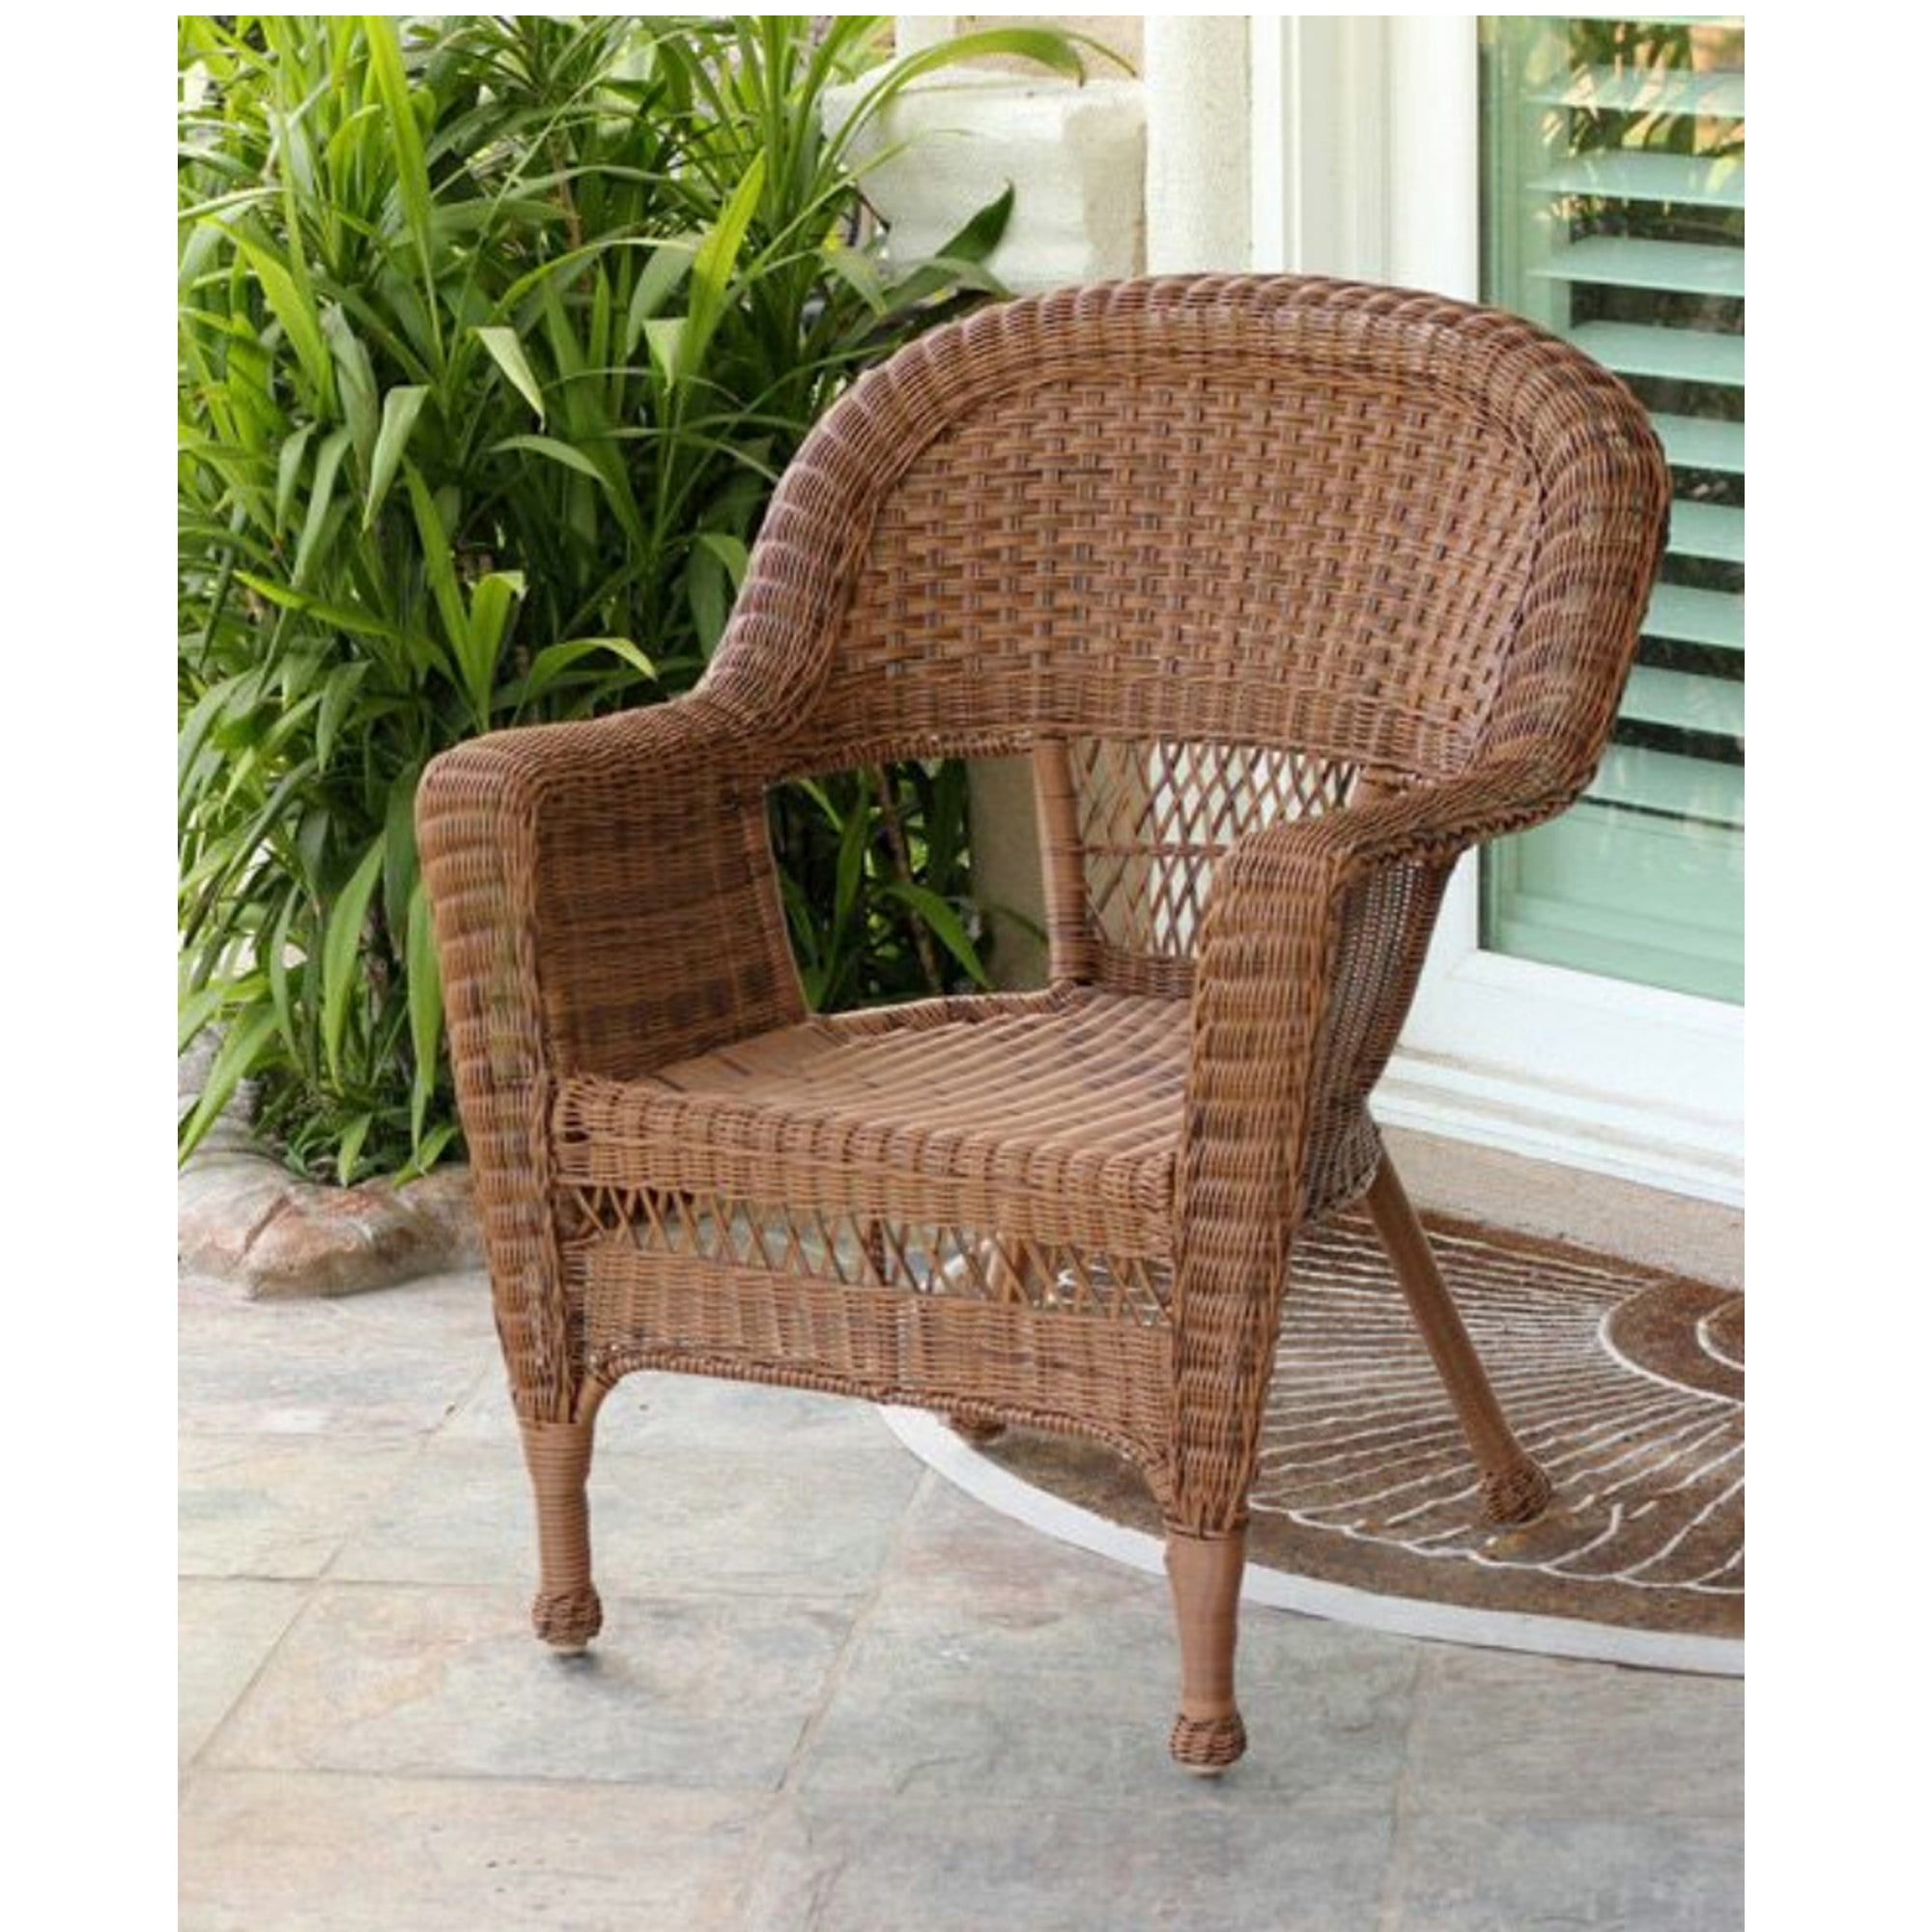 36" Honey Brown Resin Wicker Outdoor Patio Garden Chair - Walmart.com